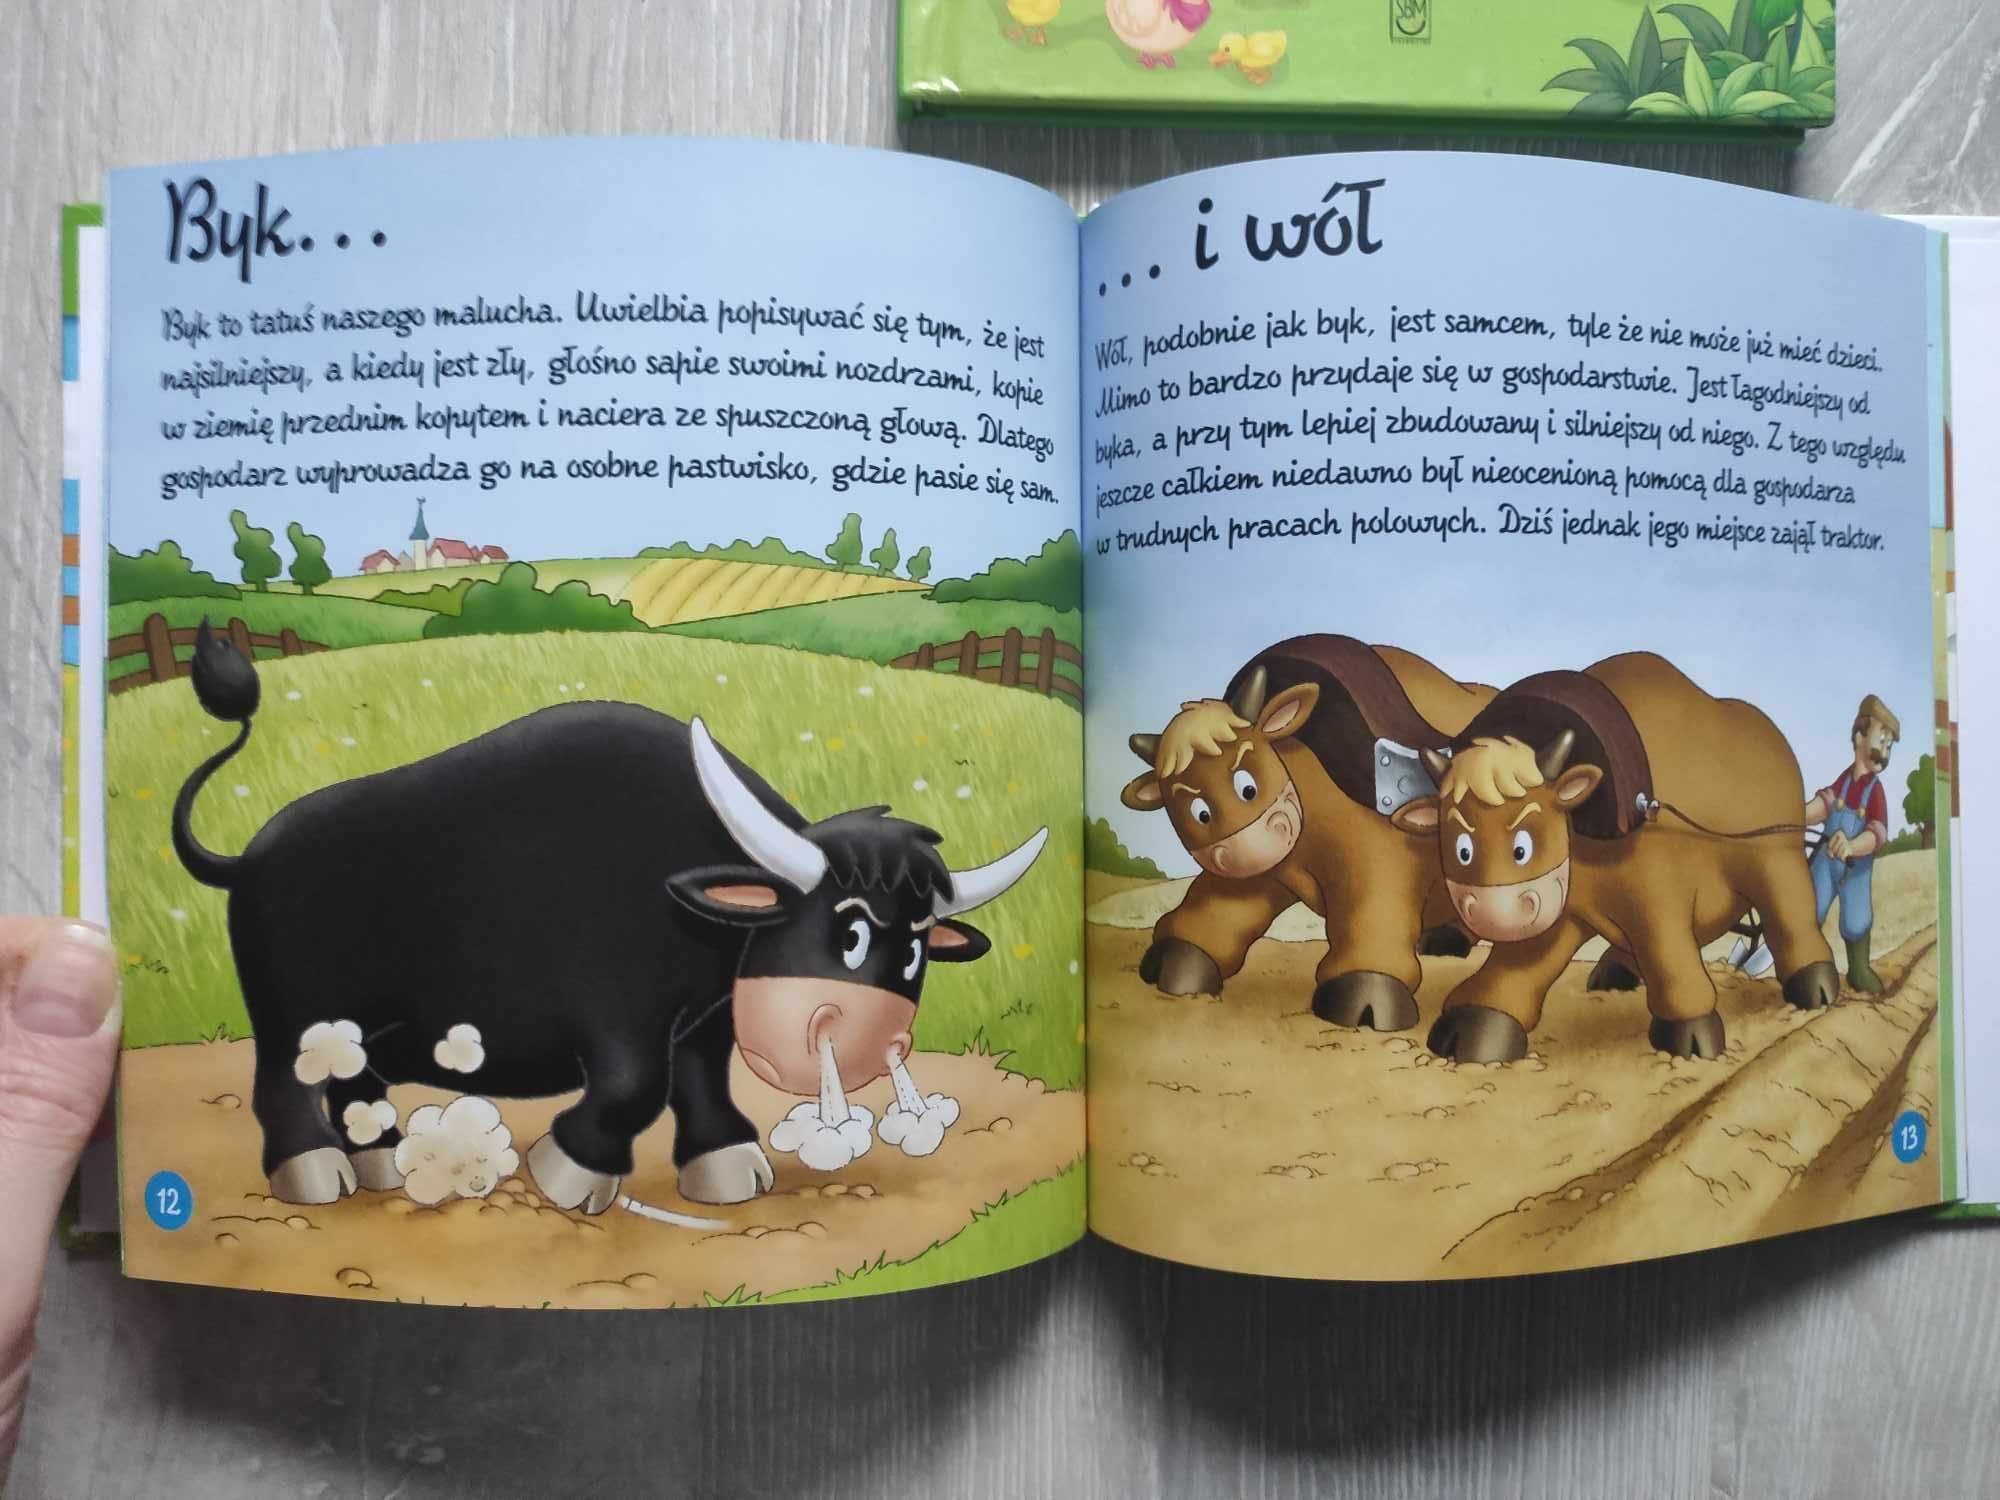 w wiejskie zagrodzie - zestaw książek dla młodszych dzieci